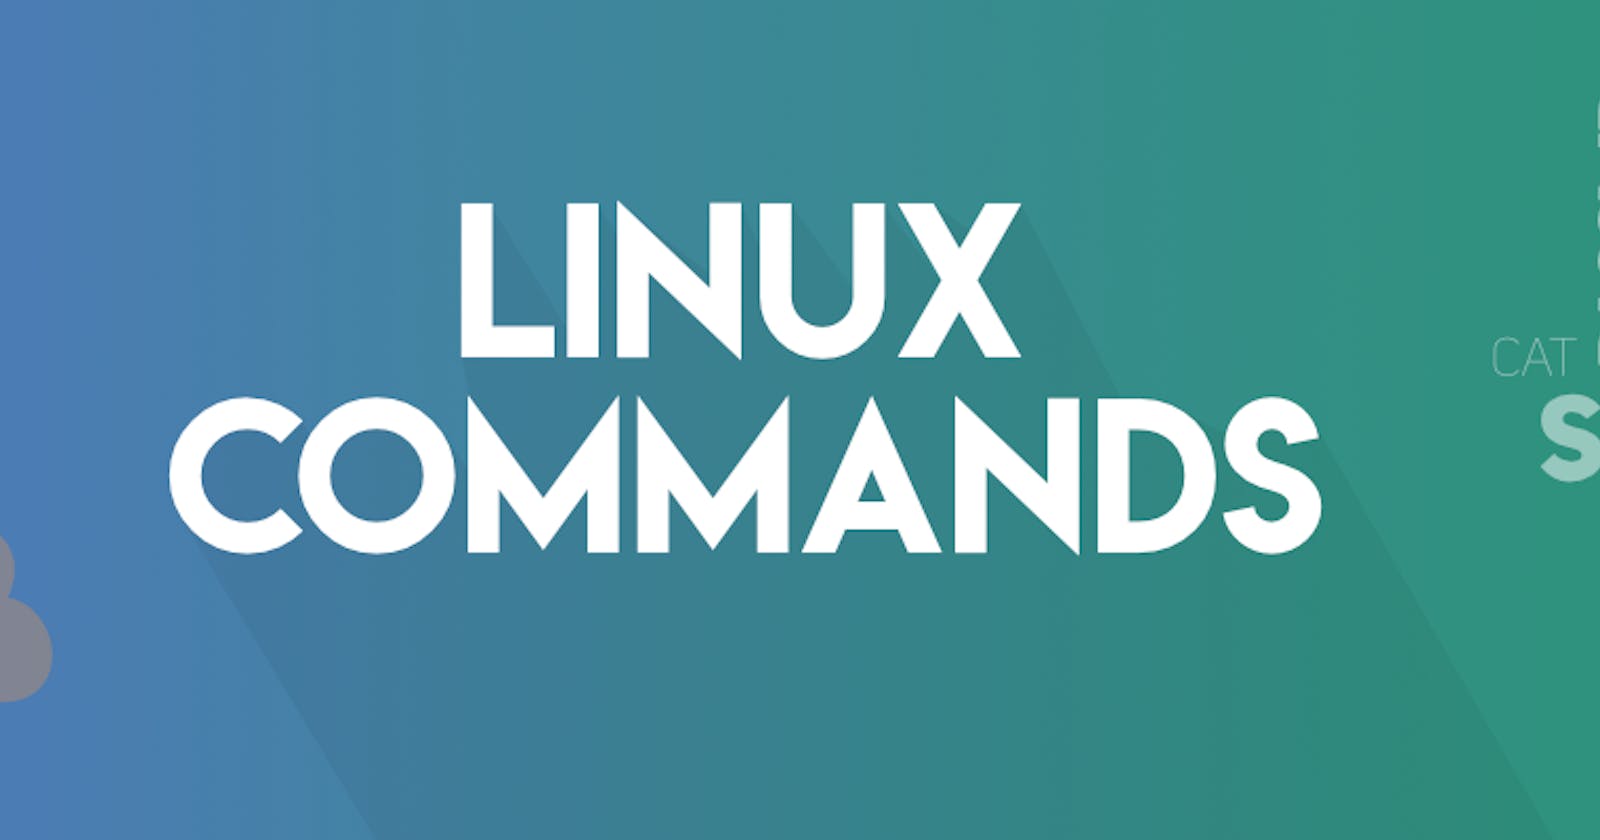 Basic Linux Commands Day 3 - #90Days of DevOps challenge